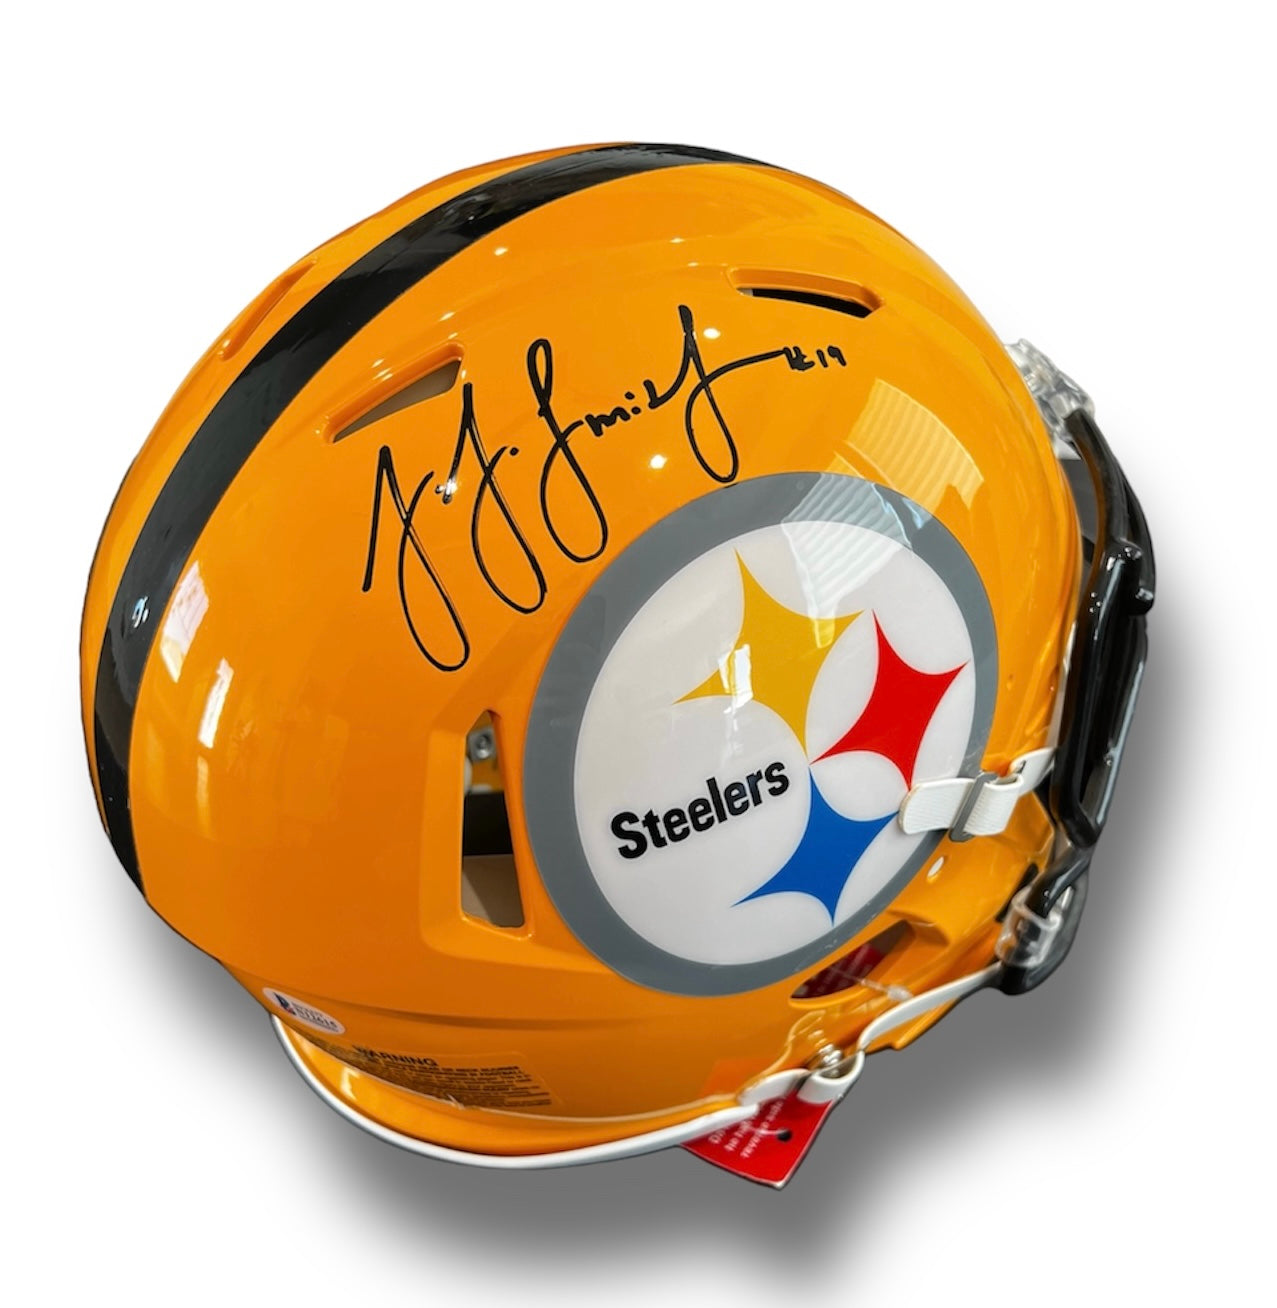 Ju Ju Smith Schuster Steelers Speed Authentic Helmet Beckett COA